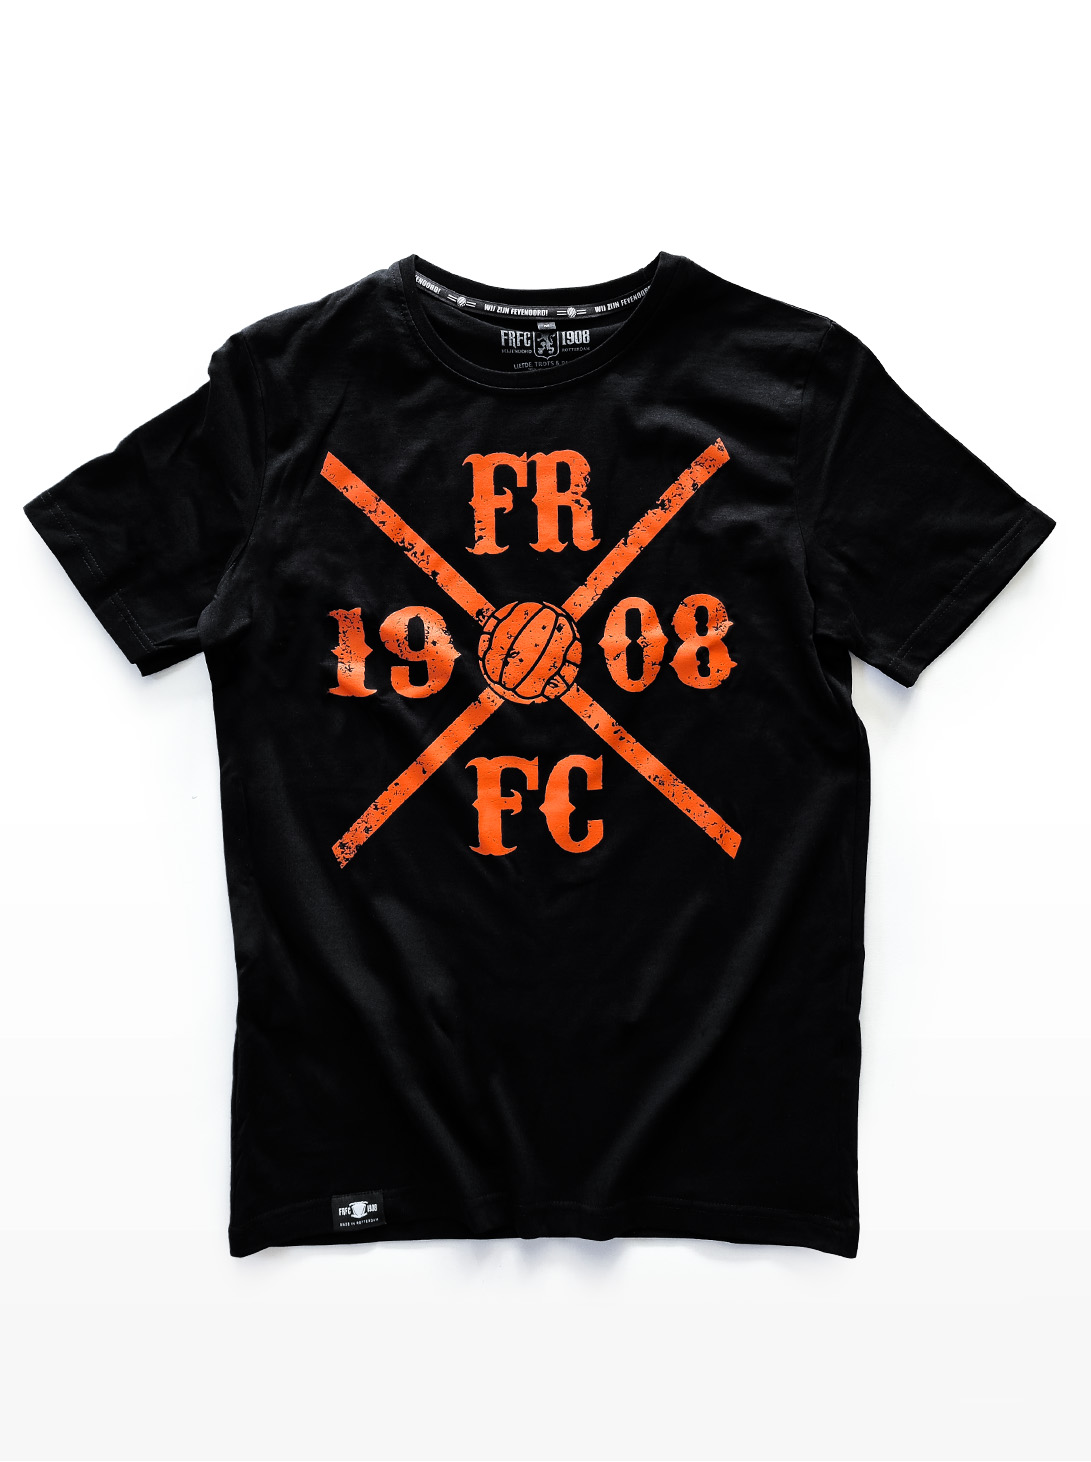 T-Shirt Zwart met Oranje Kruislogo, FRFC1908